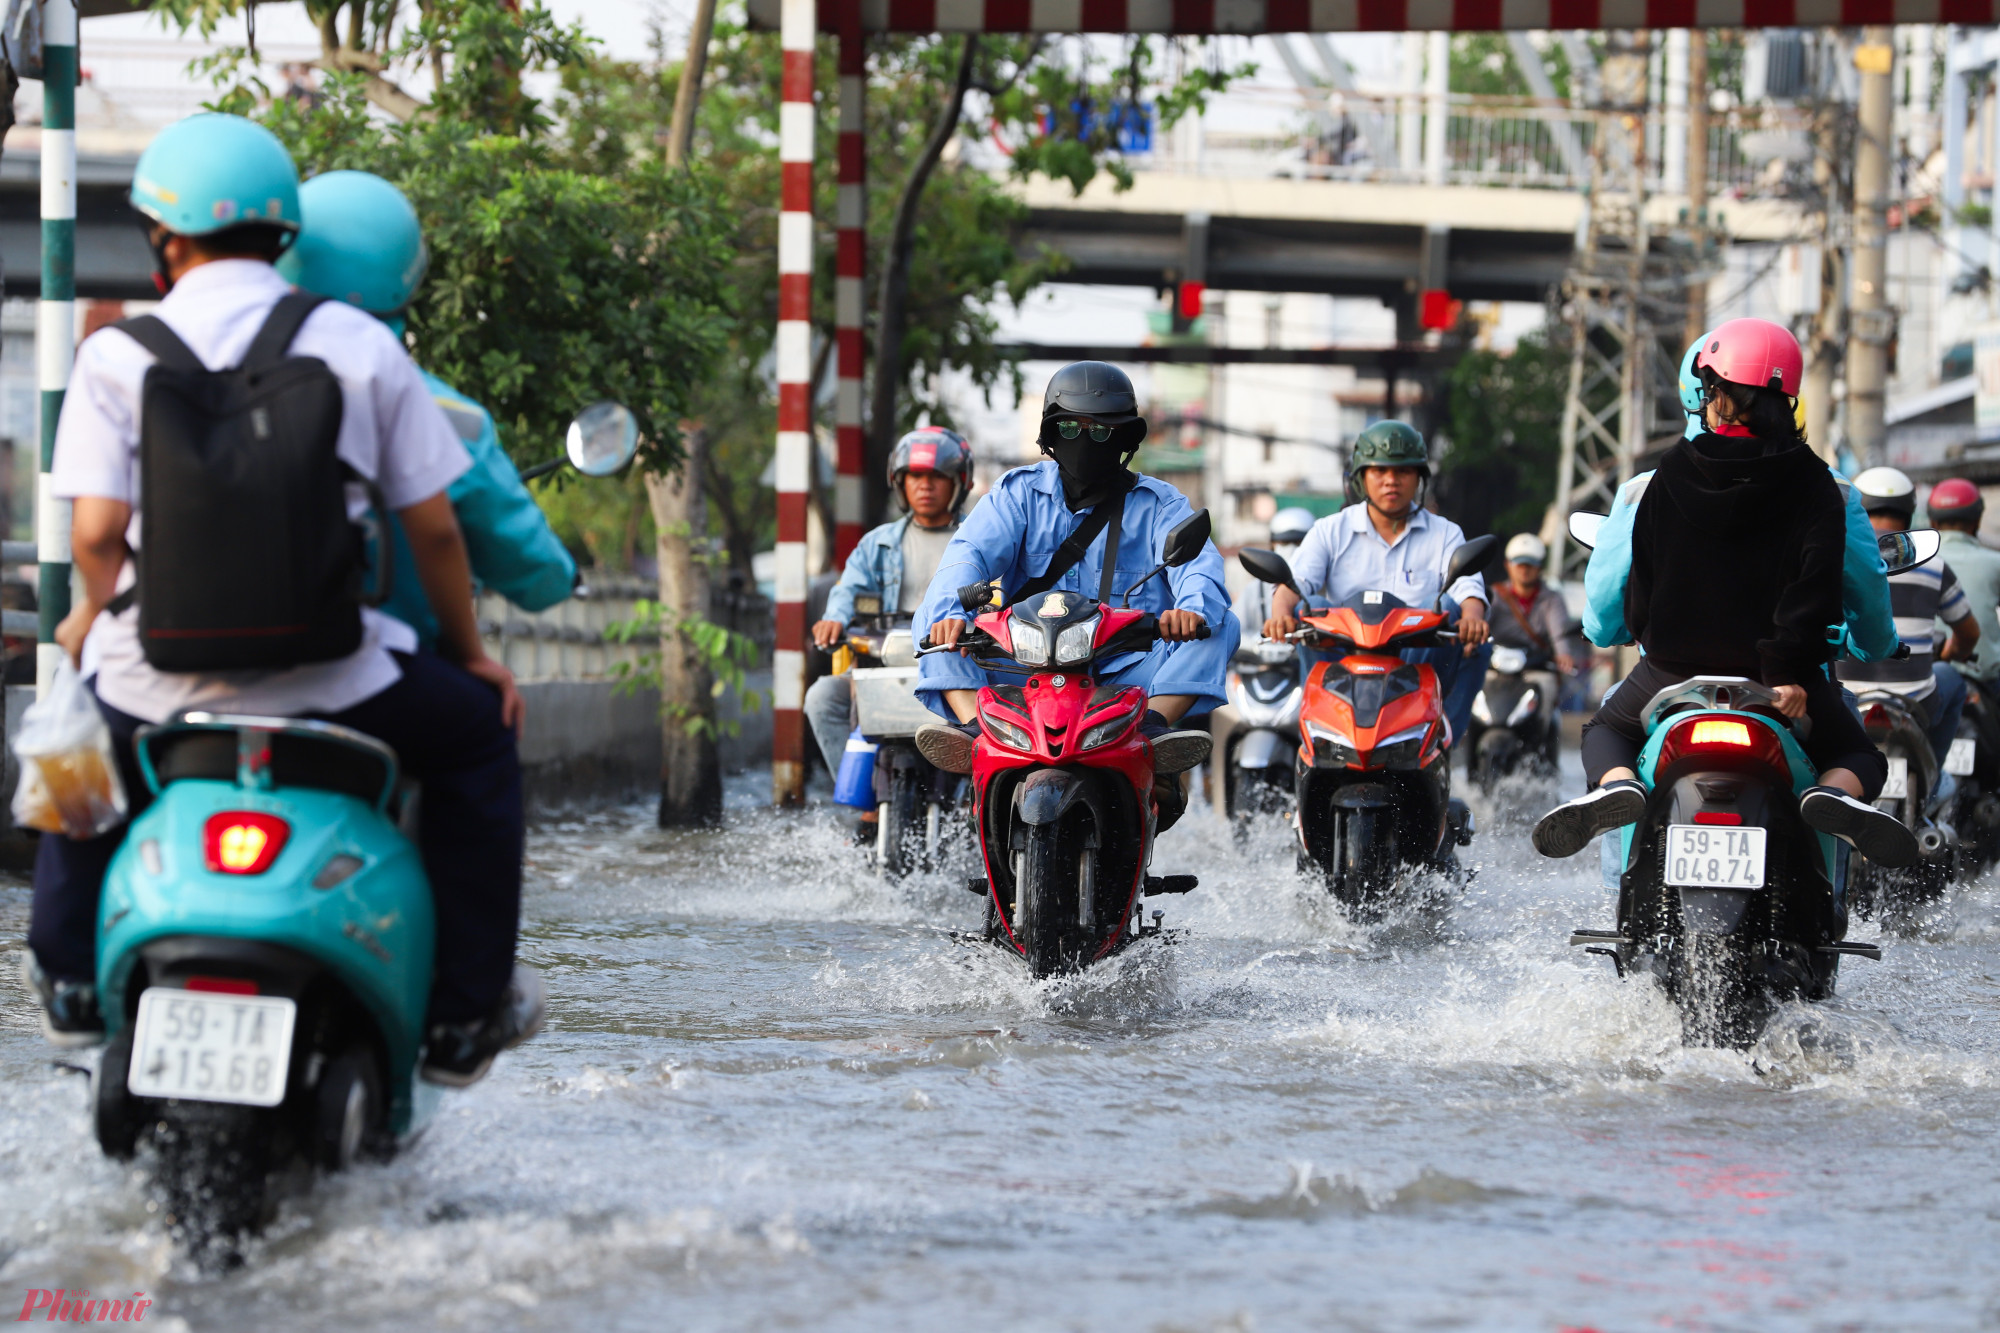 Mực nước xấp xỉ ngập nửa bánh xe gắn máy, khiến việc di chuyển của người dân gặp nhiều khó khăn.